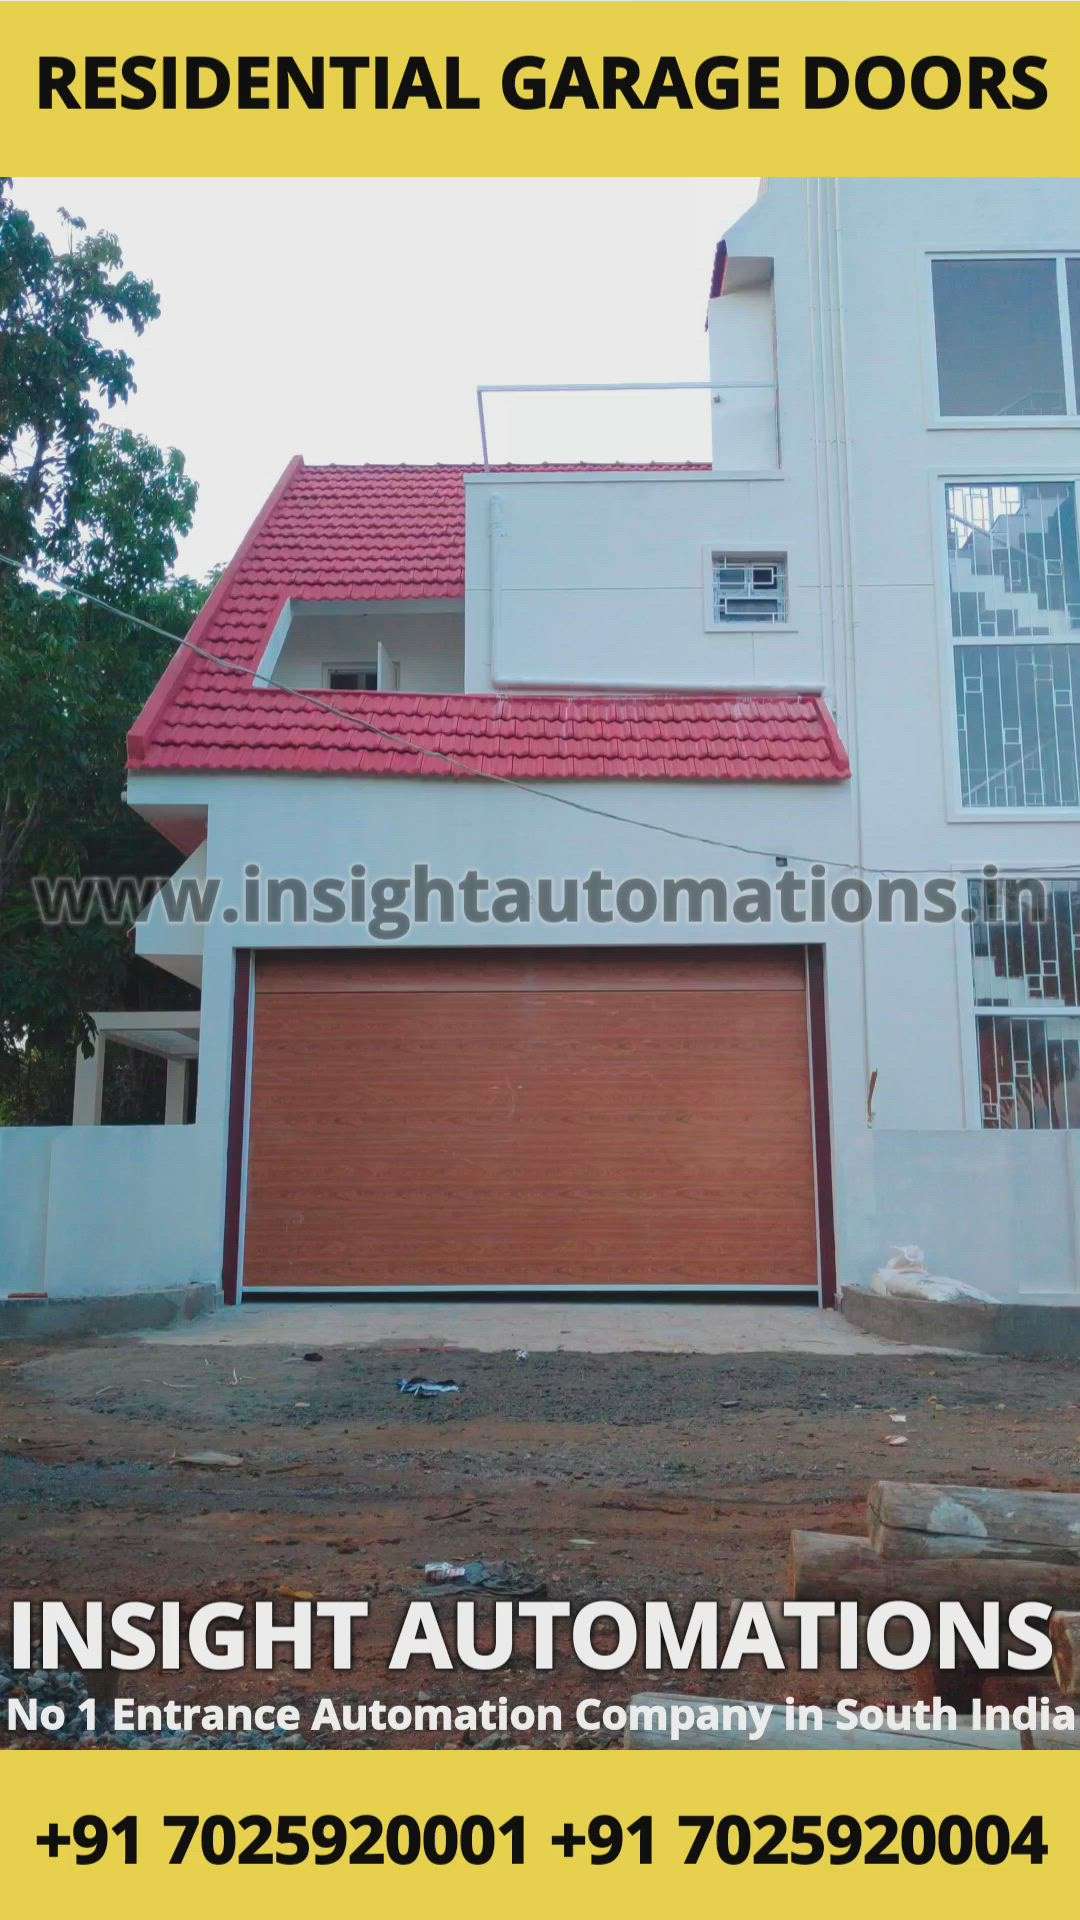 Residential Garage Door
#insightautomations 
#garagedoor